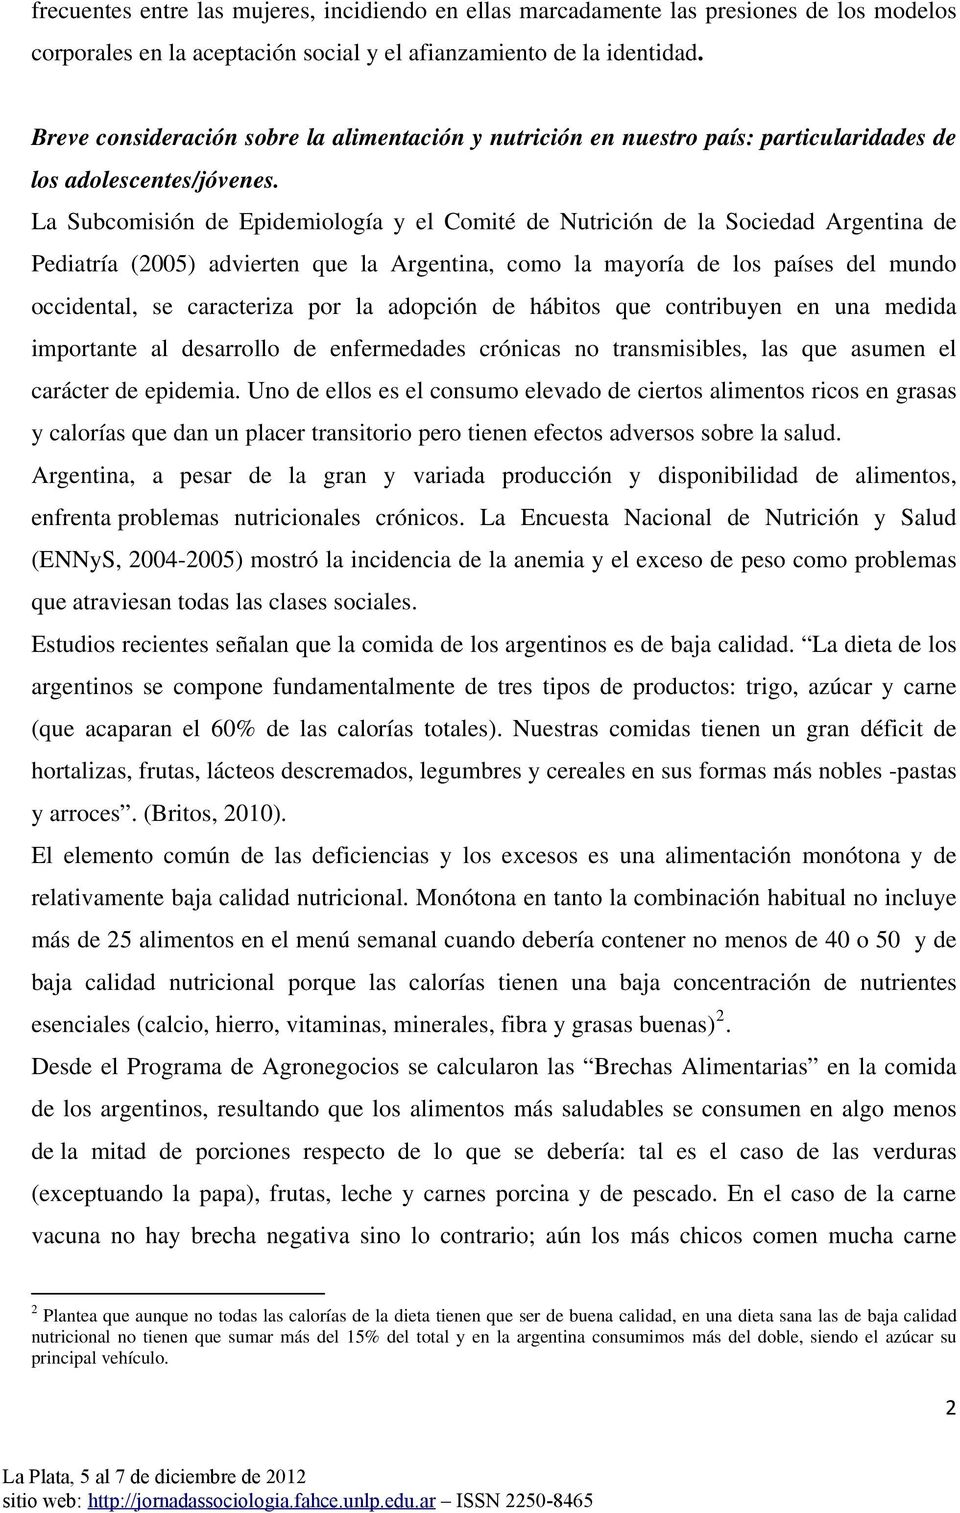 La Subcomisión de Epidemiología y el Comité de Nutrición de la Sociedad Argentina de Pediatría (2005) advierten que la Argentina, como la mayoría de los países del mundo occidental, se caracteriza